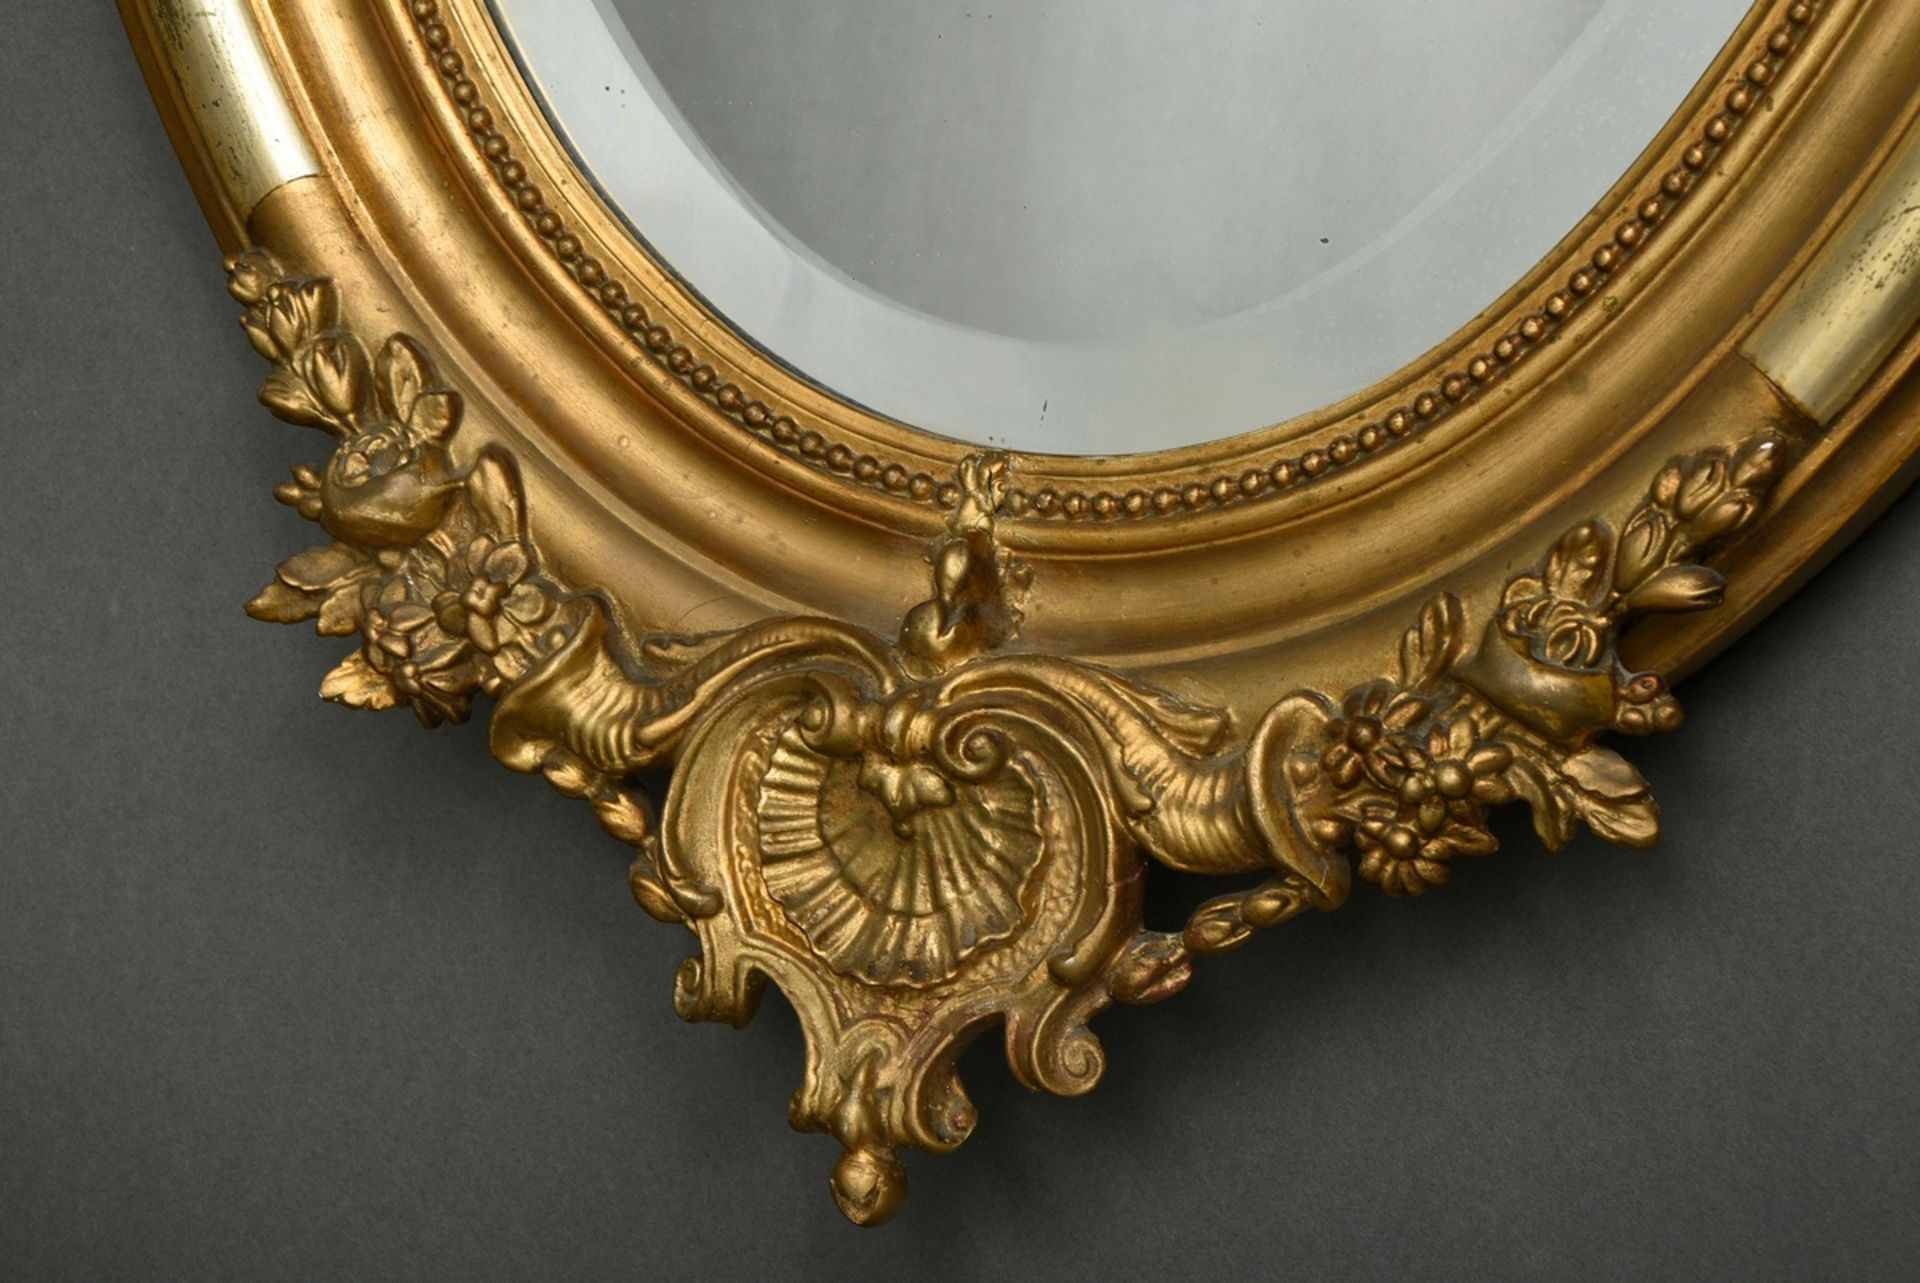 Ovaler vergoldeter Stuckspiegel mit ornamentalem Aufsatz und floralen Dekorationen, Spiegelglas mit - Bild 3 aus 5